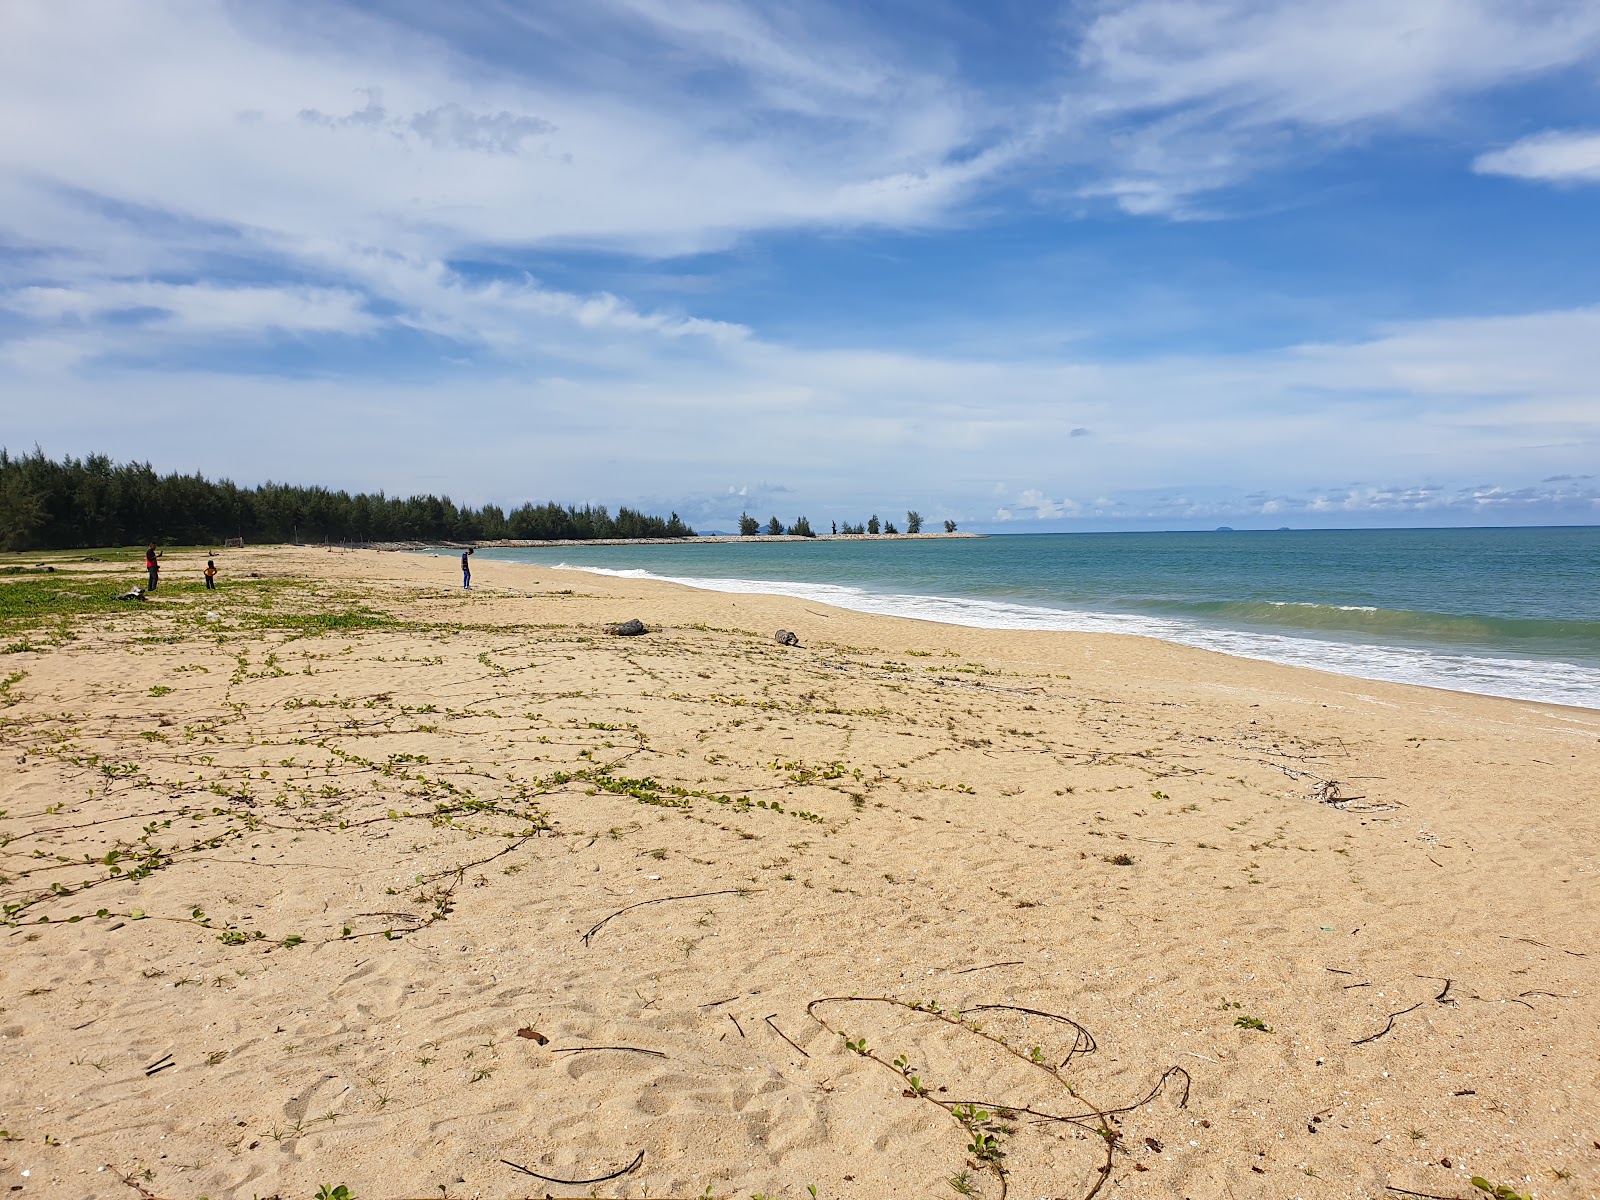 Valokuva Teluk Ketapang Beachista. pinnalla turkoosi vesi:n kanssa